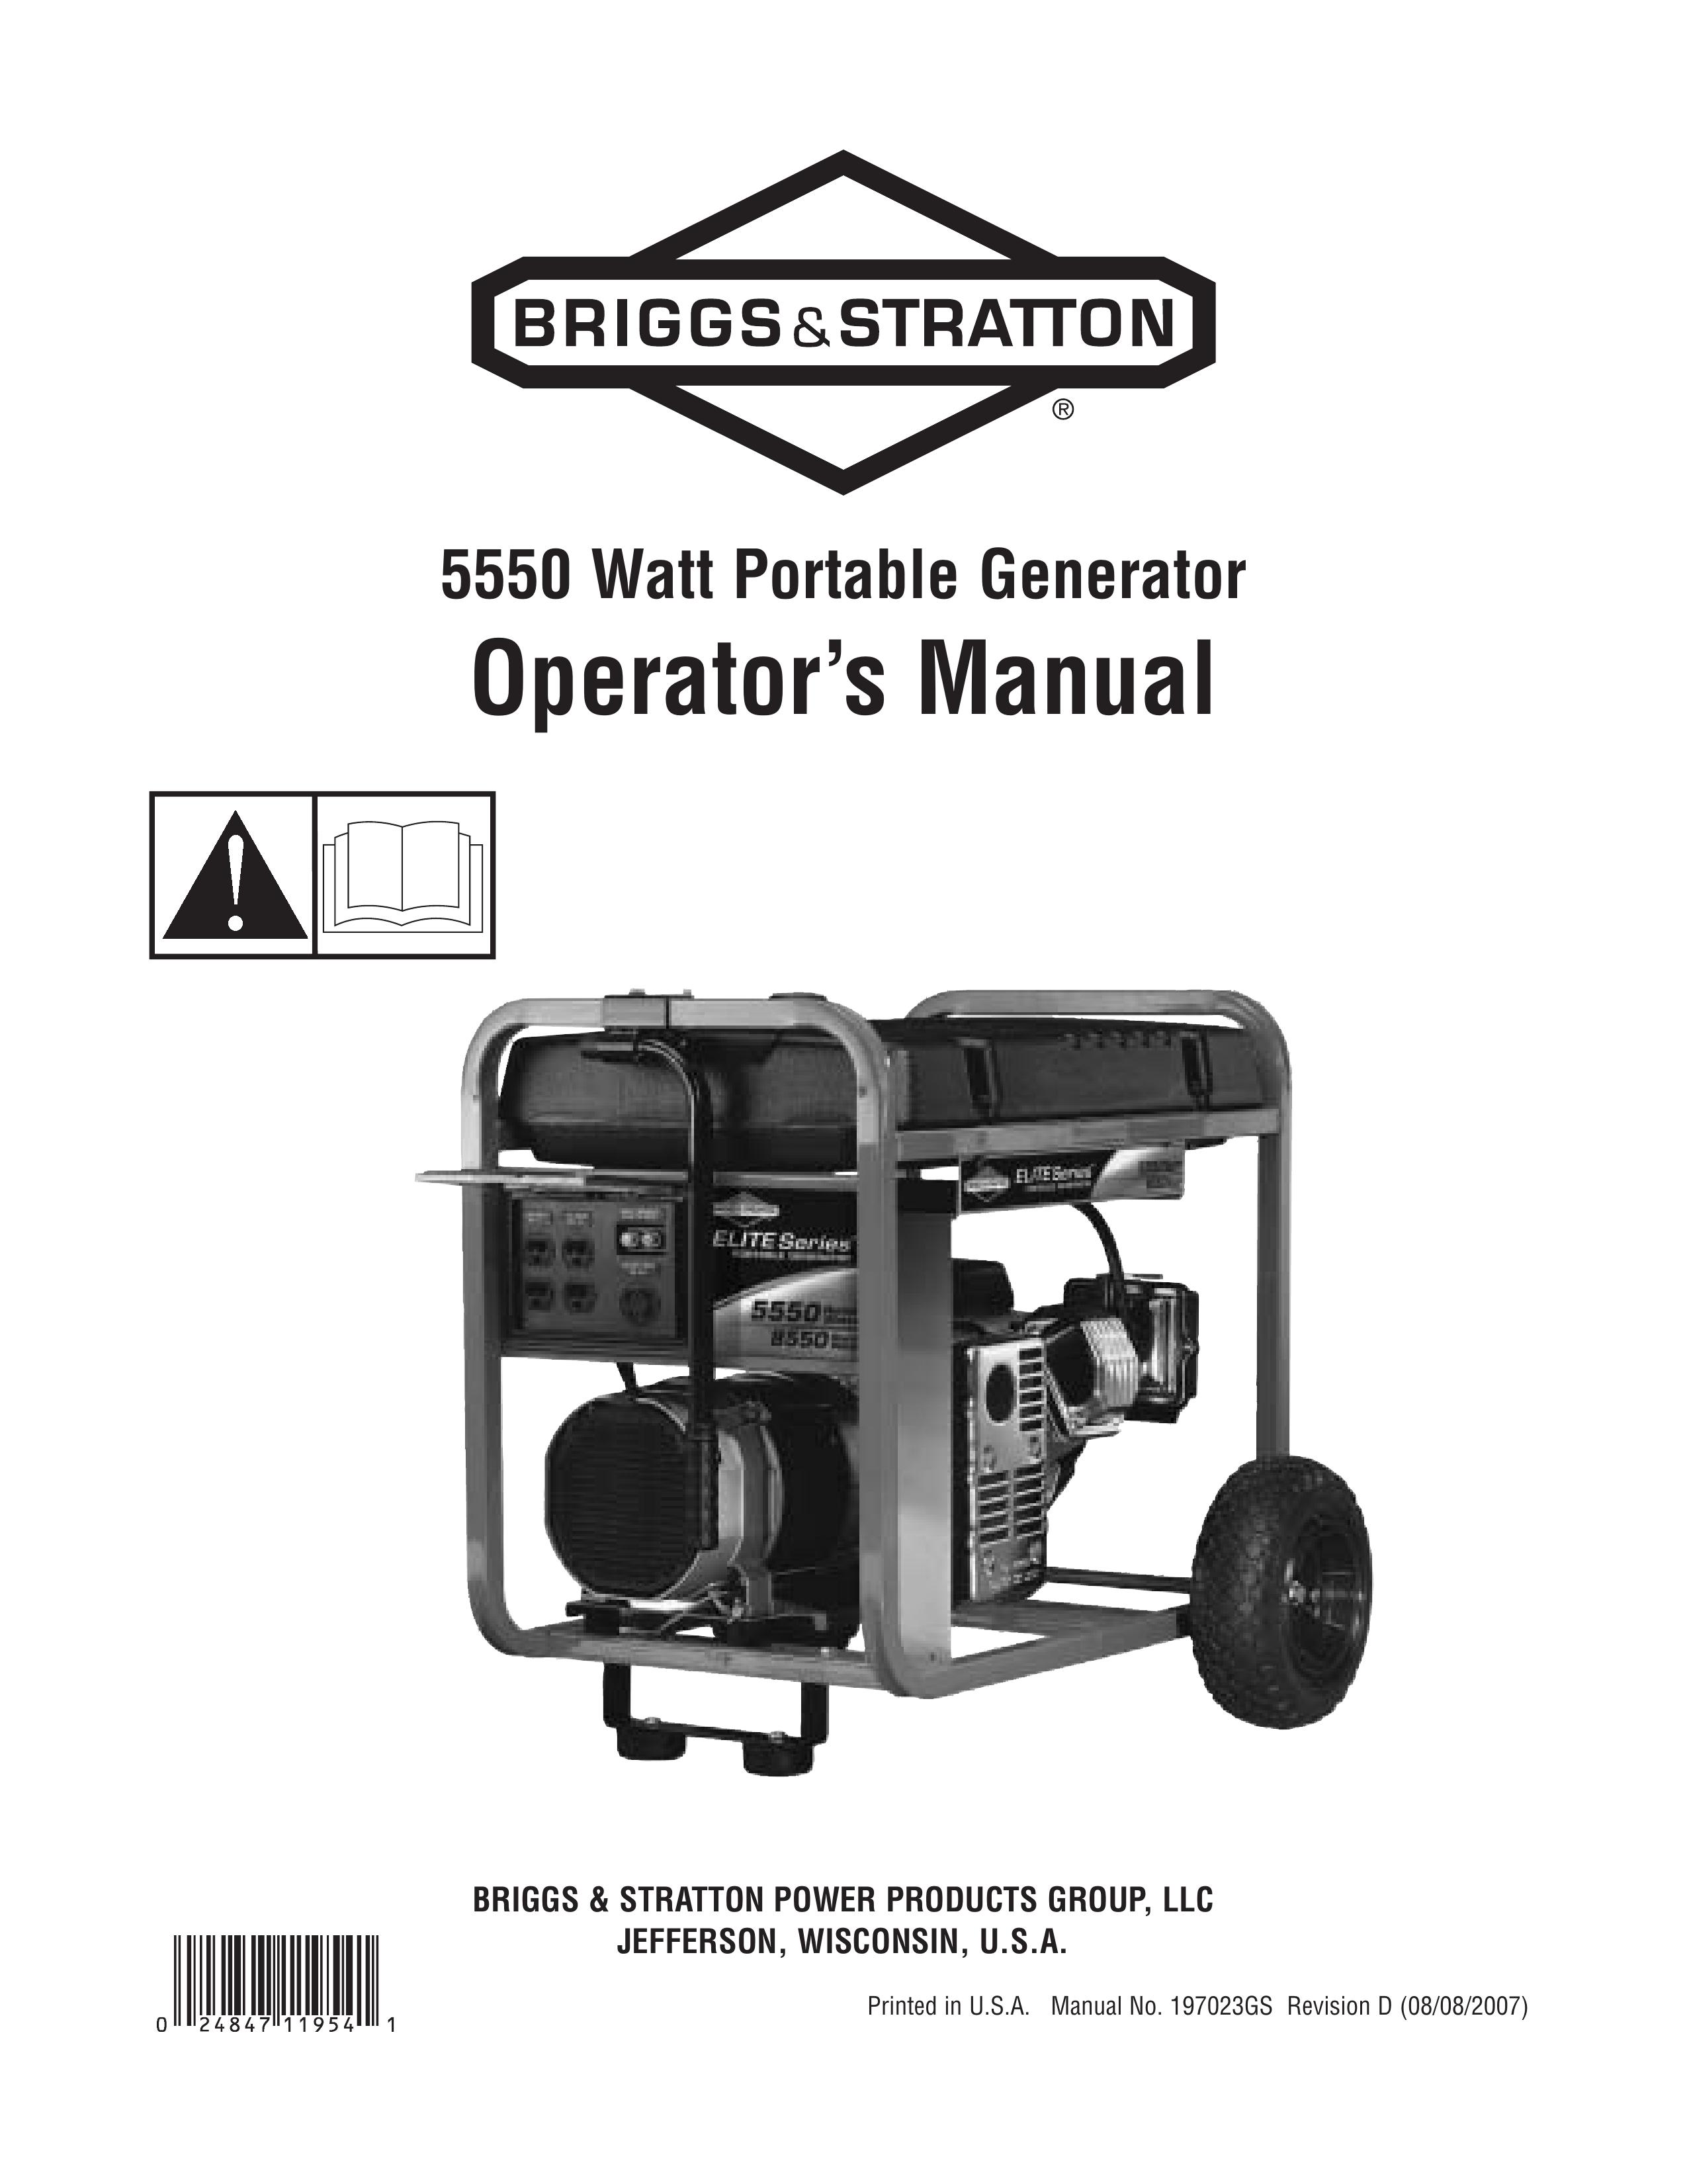 Briggs & Stratton 030241-0 Portable Generator User Manual